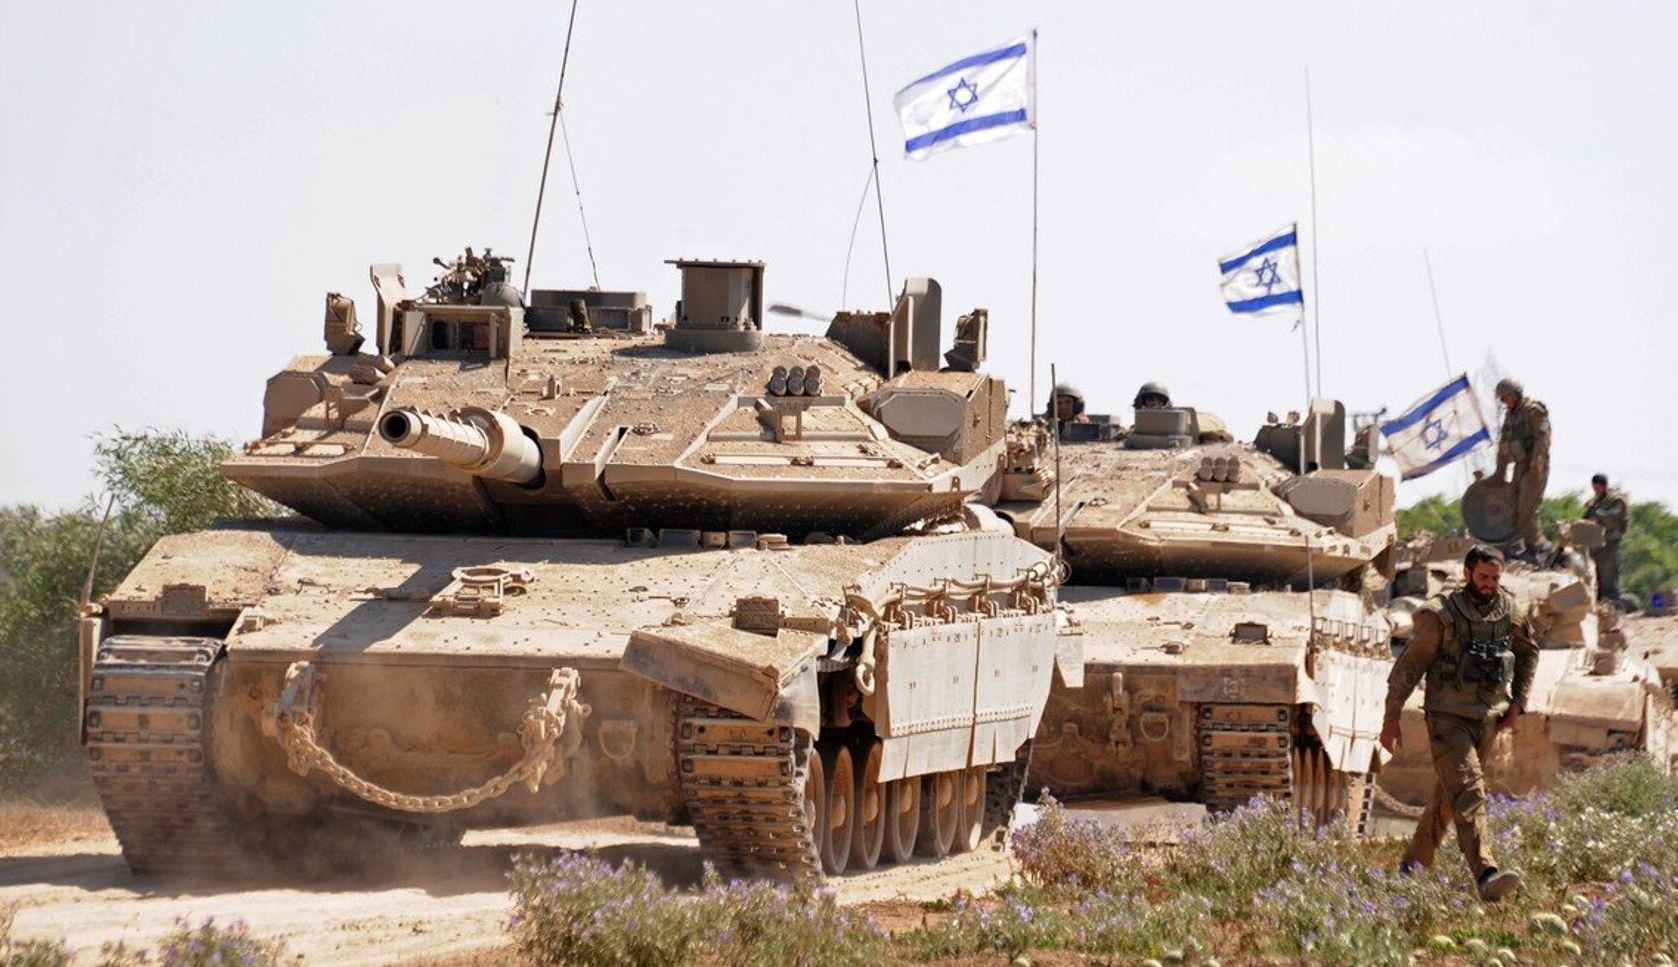 Joe Biden, către Benjamin Netanyahu: „Ocuparea Gazei ar fi o mare greşeală” - 1-1700124359.jpg